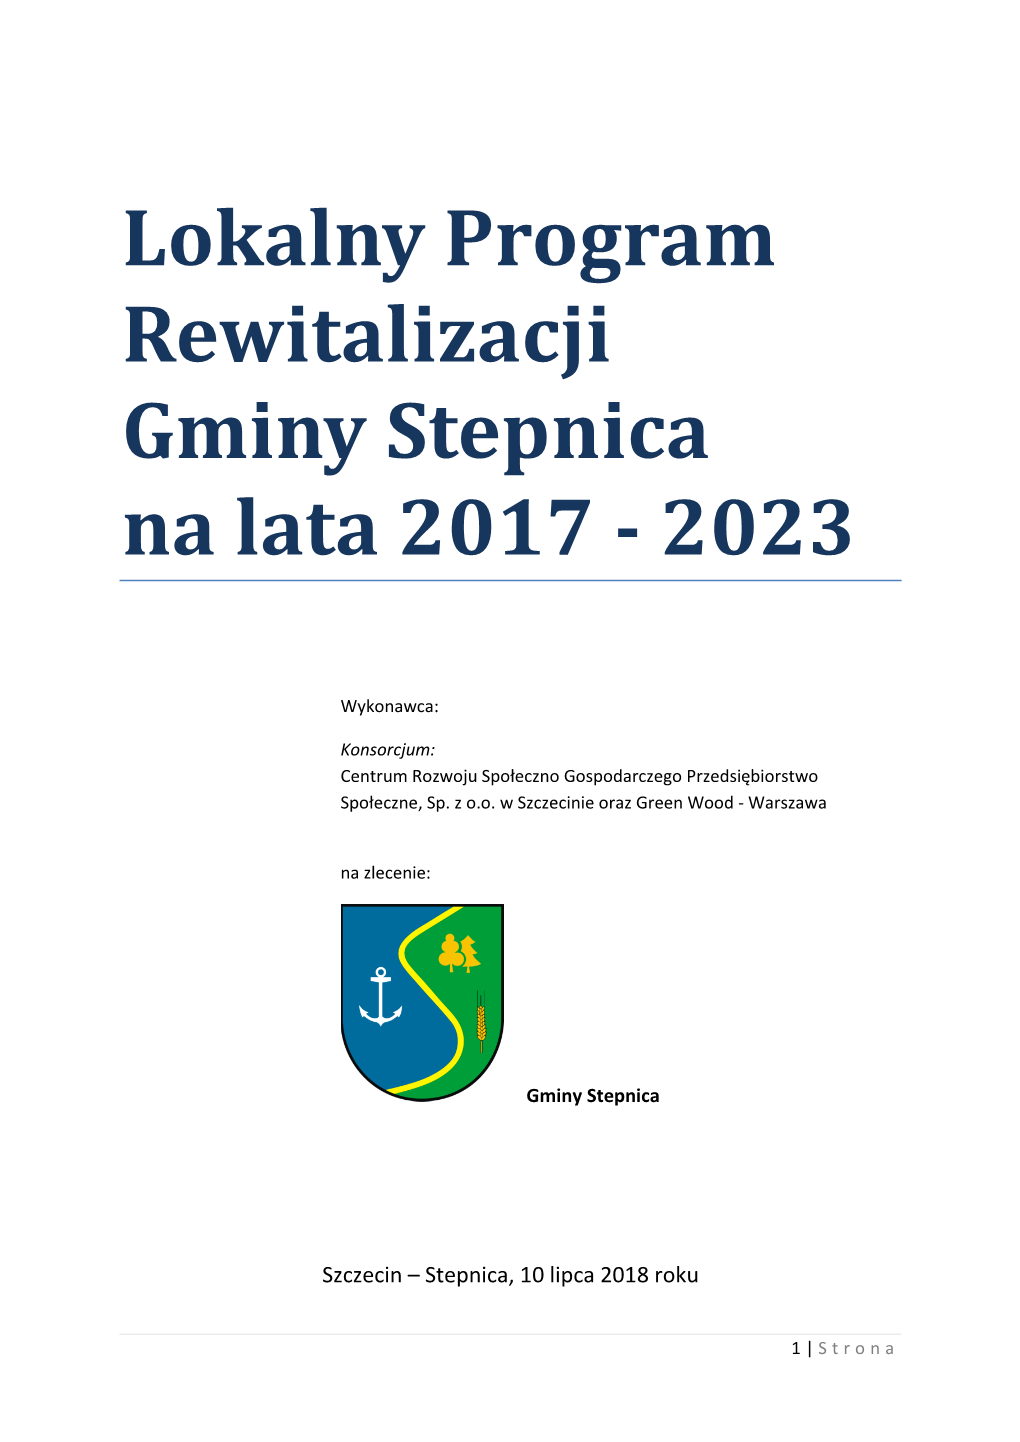 Lokalny Program Rewitalizacji Stepnicy 2017-2023